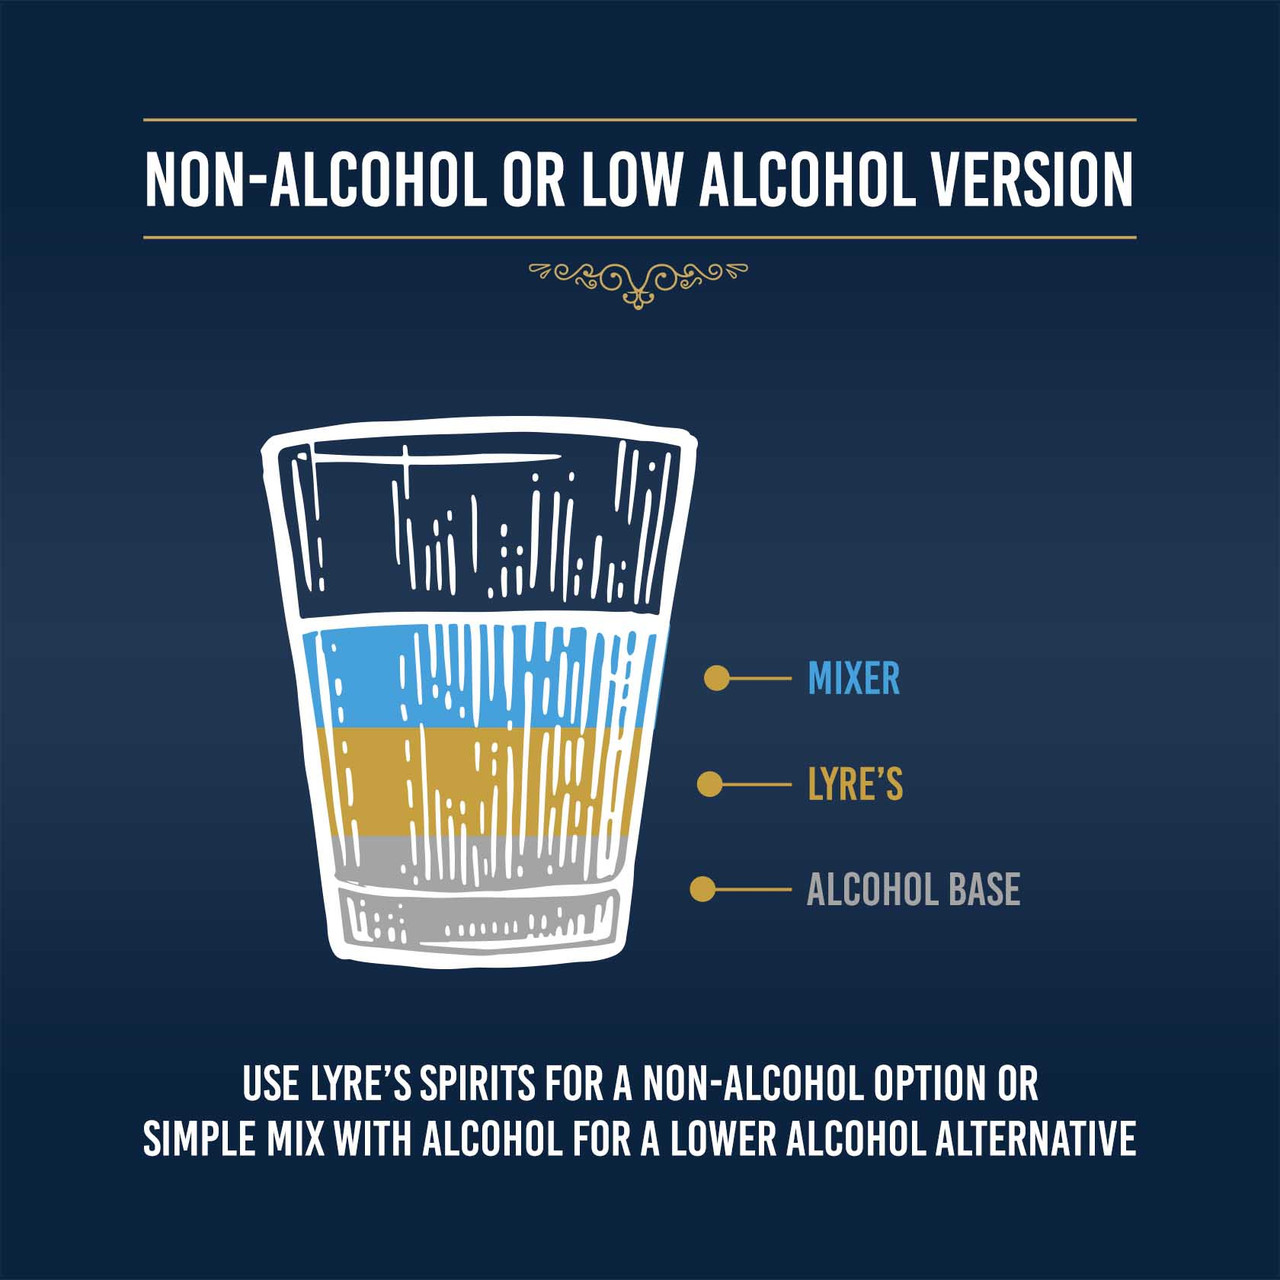 Drikkevarer med lavt alkoholindhold